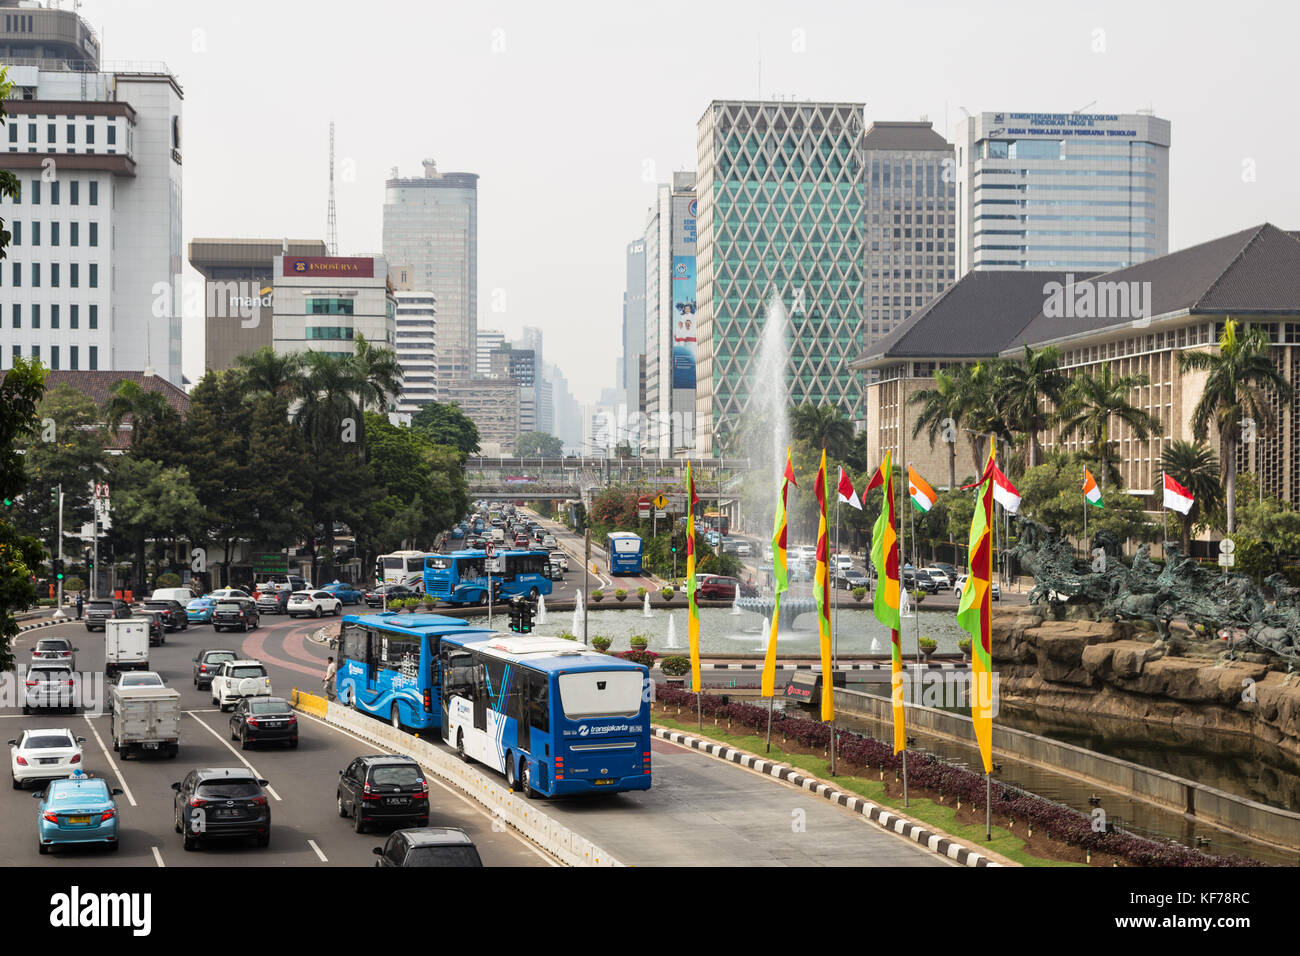 Jakarta, Indonesien - 16. Oktober 2017: ein transjakarta Bus verwendet seine eigene Fahrstreifen zu den starken Verkehr entlang der thamrin Avenue im b zu vermeiden. Stockfoto